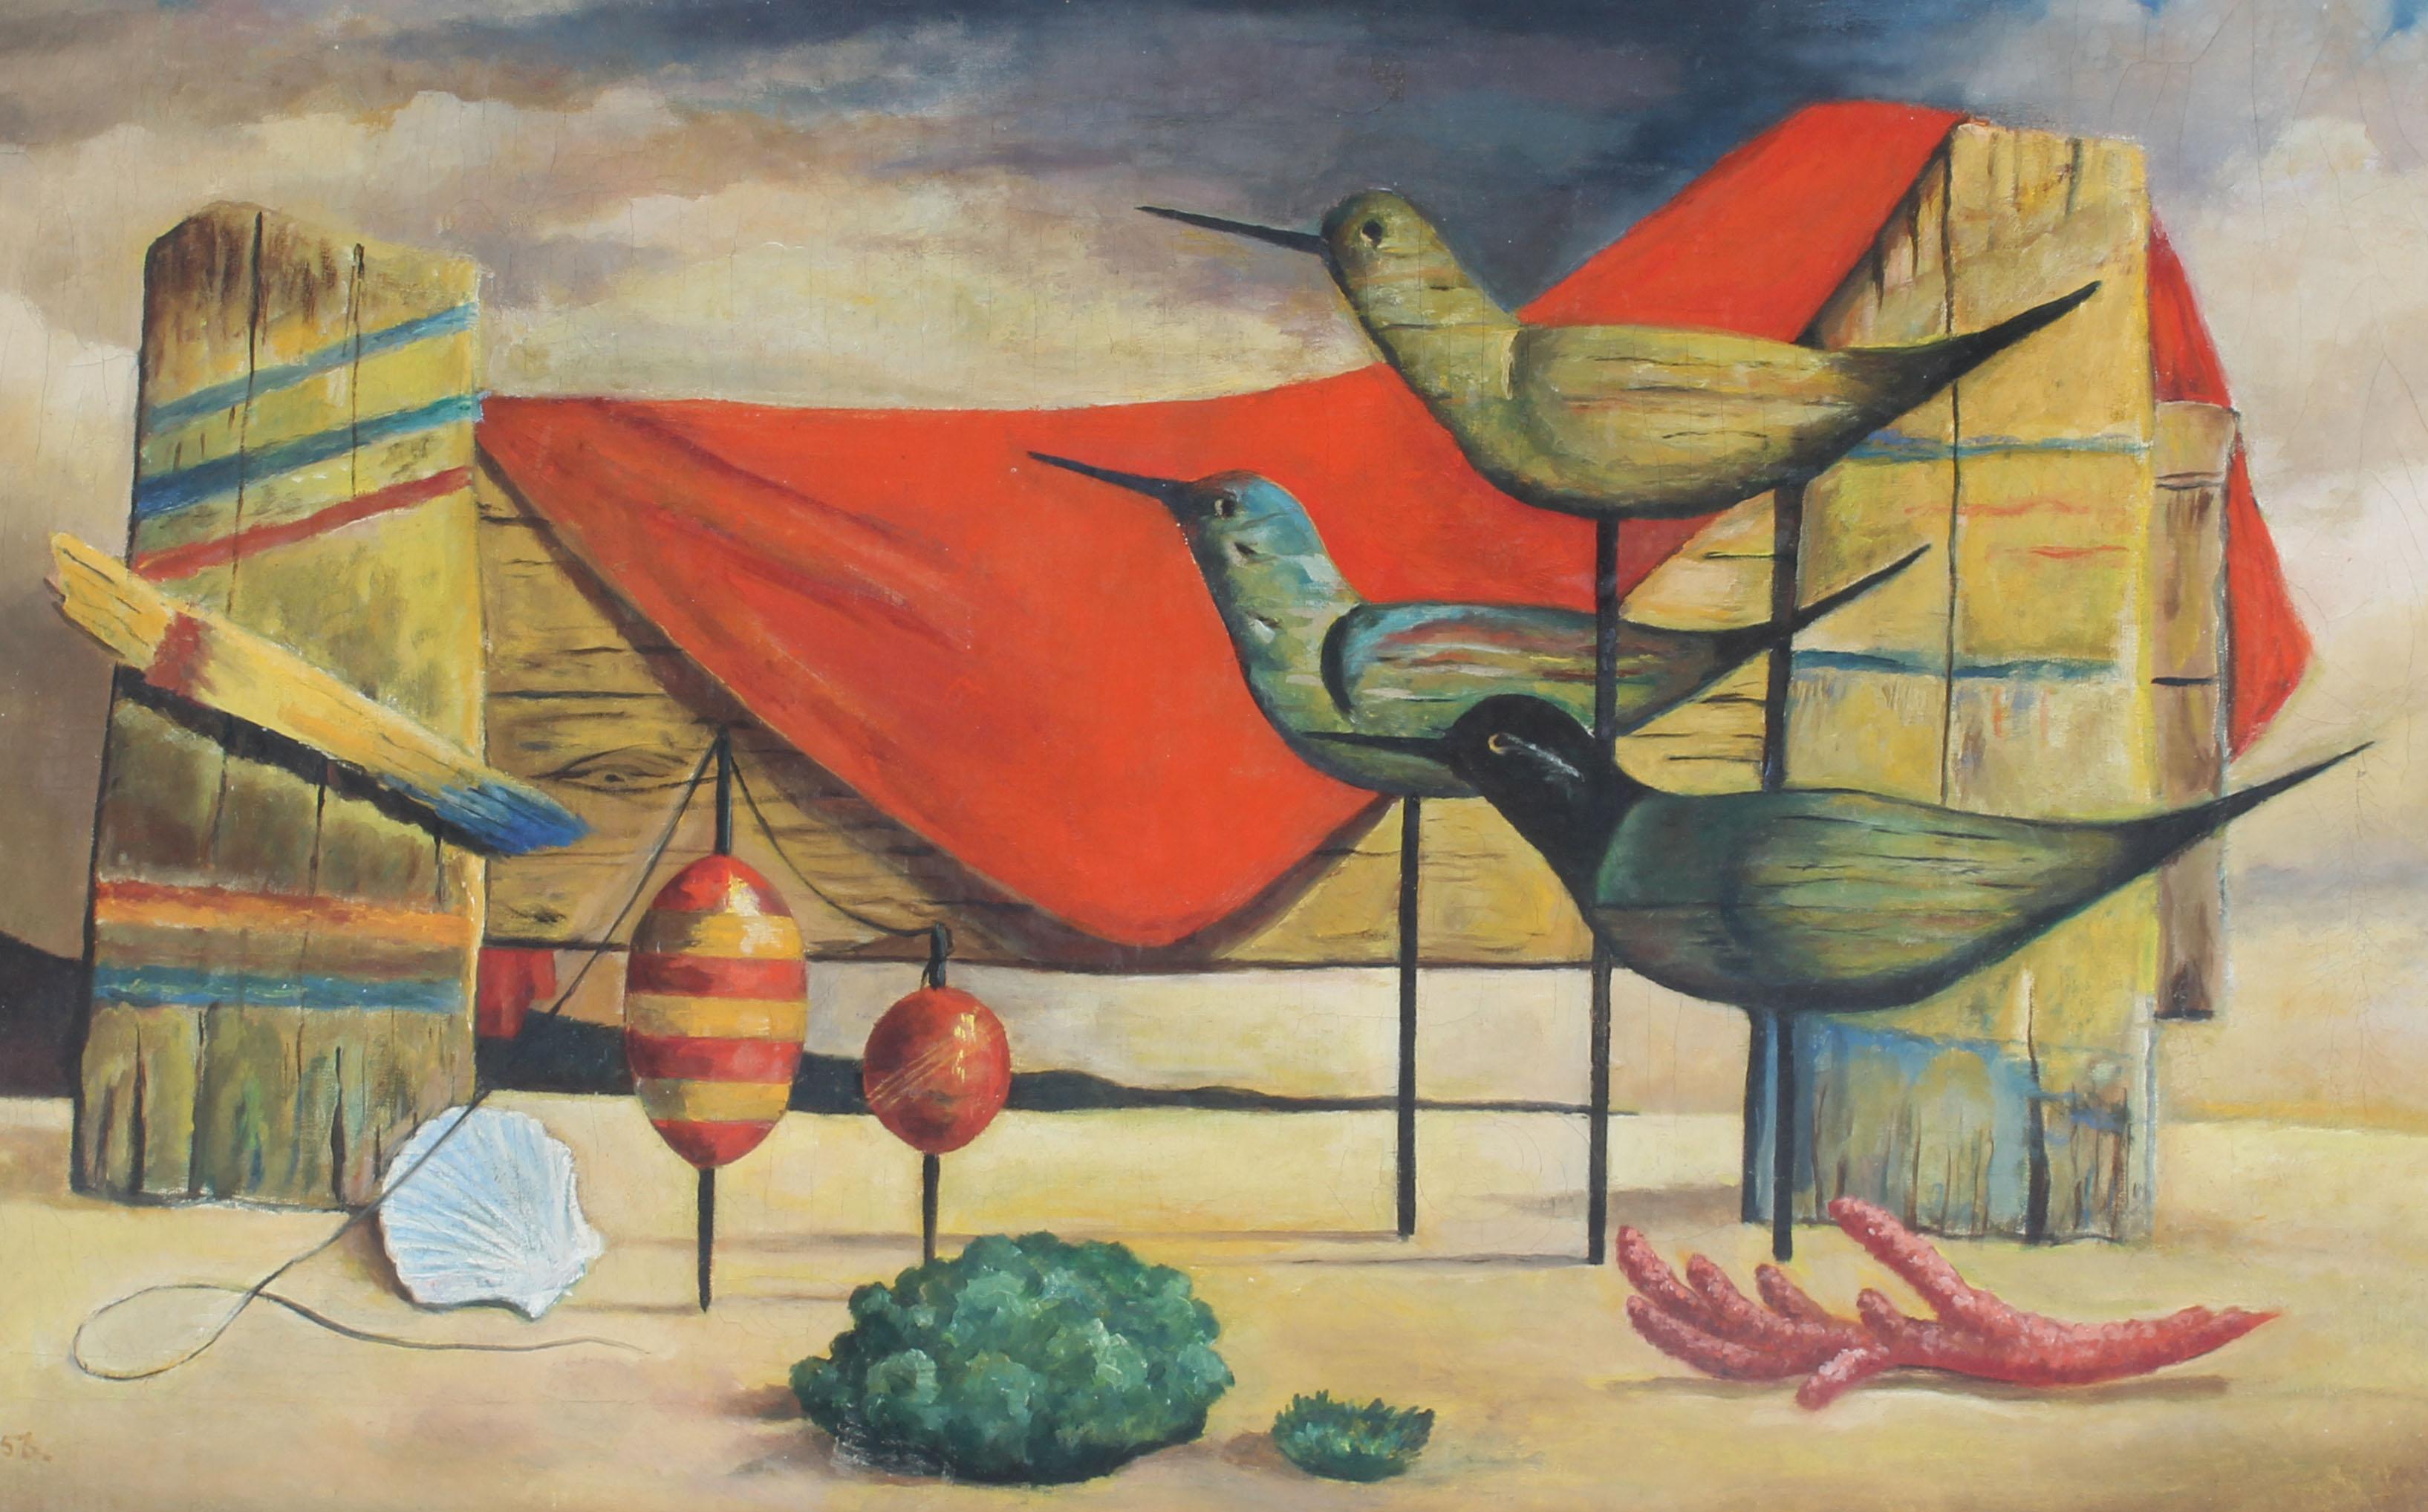 Ancienne peinture à l'huile moderniste américaine surréaliste de scène de plage par Ada Weill....  Huile sur toile, vers 1956.  Signé.  Présenté dans un cadre d'époque.  Image, 28 